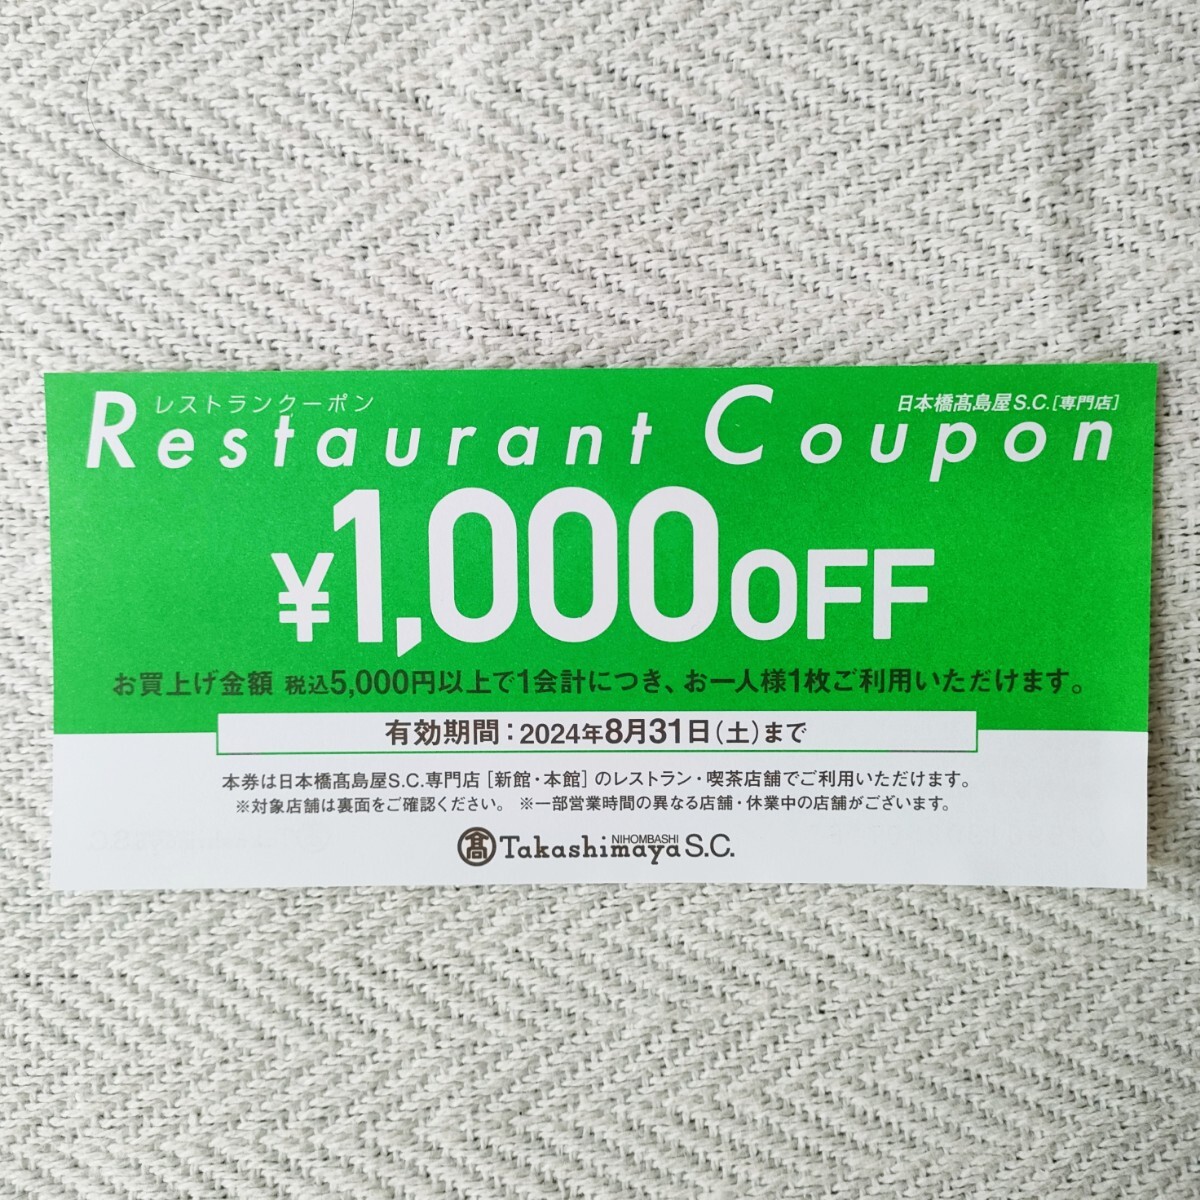  Япония . высота остров магазин S.C. специализированный магазин [ новый павильон *книга@ павильон ] ресторан купон 1,000 иен льготный билет 